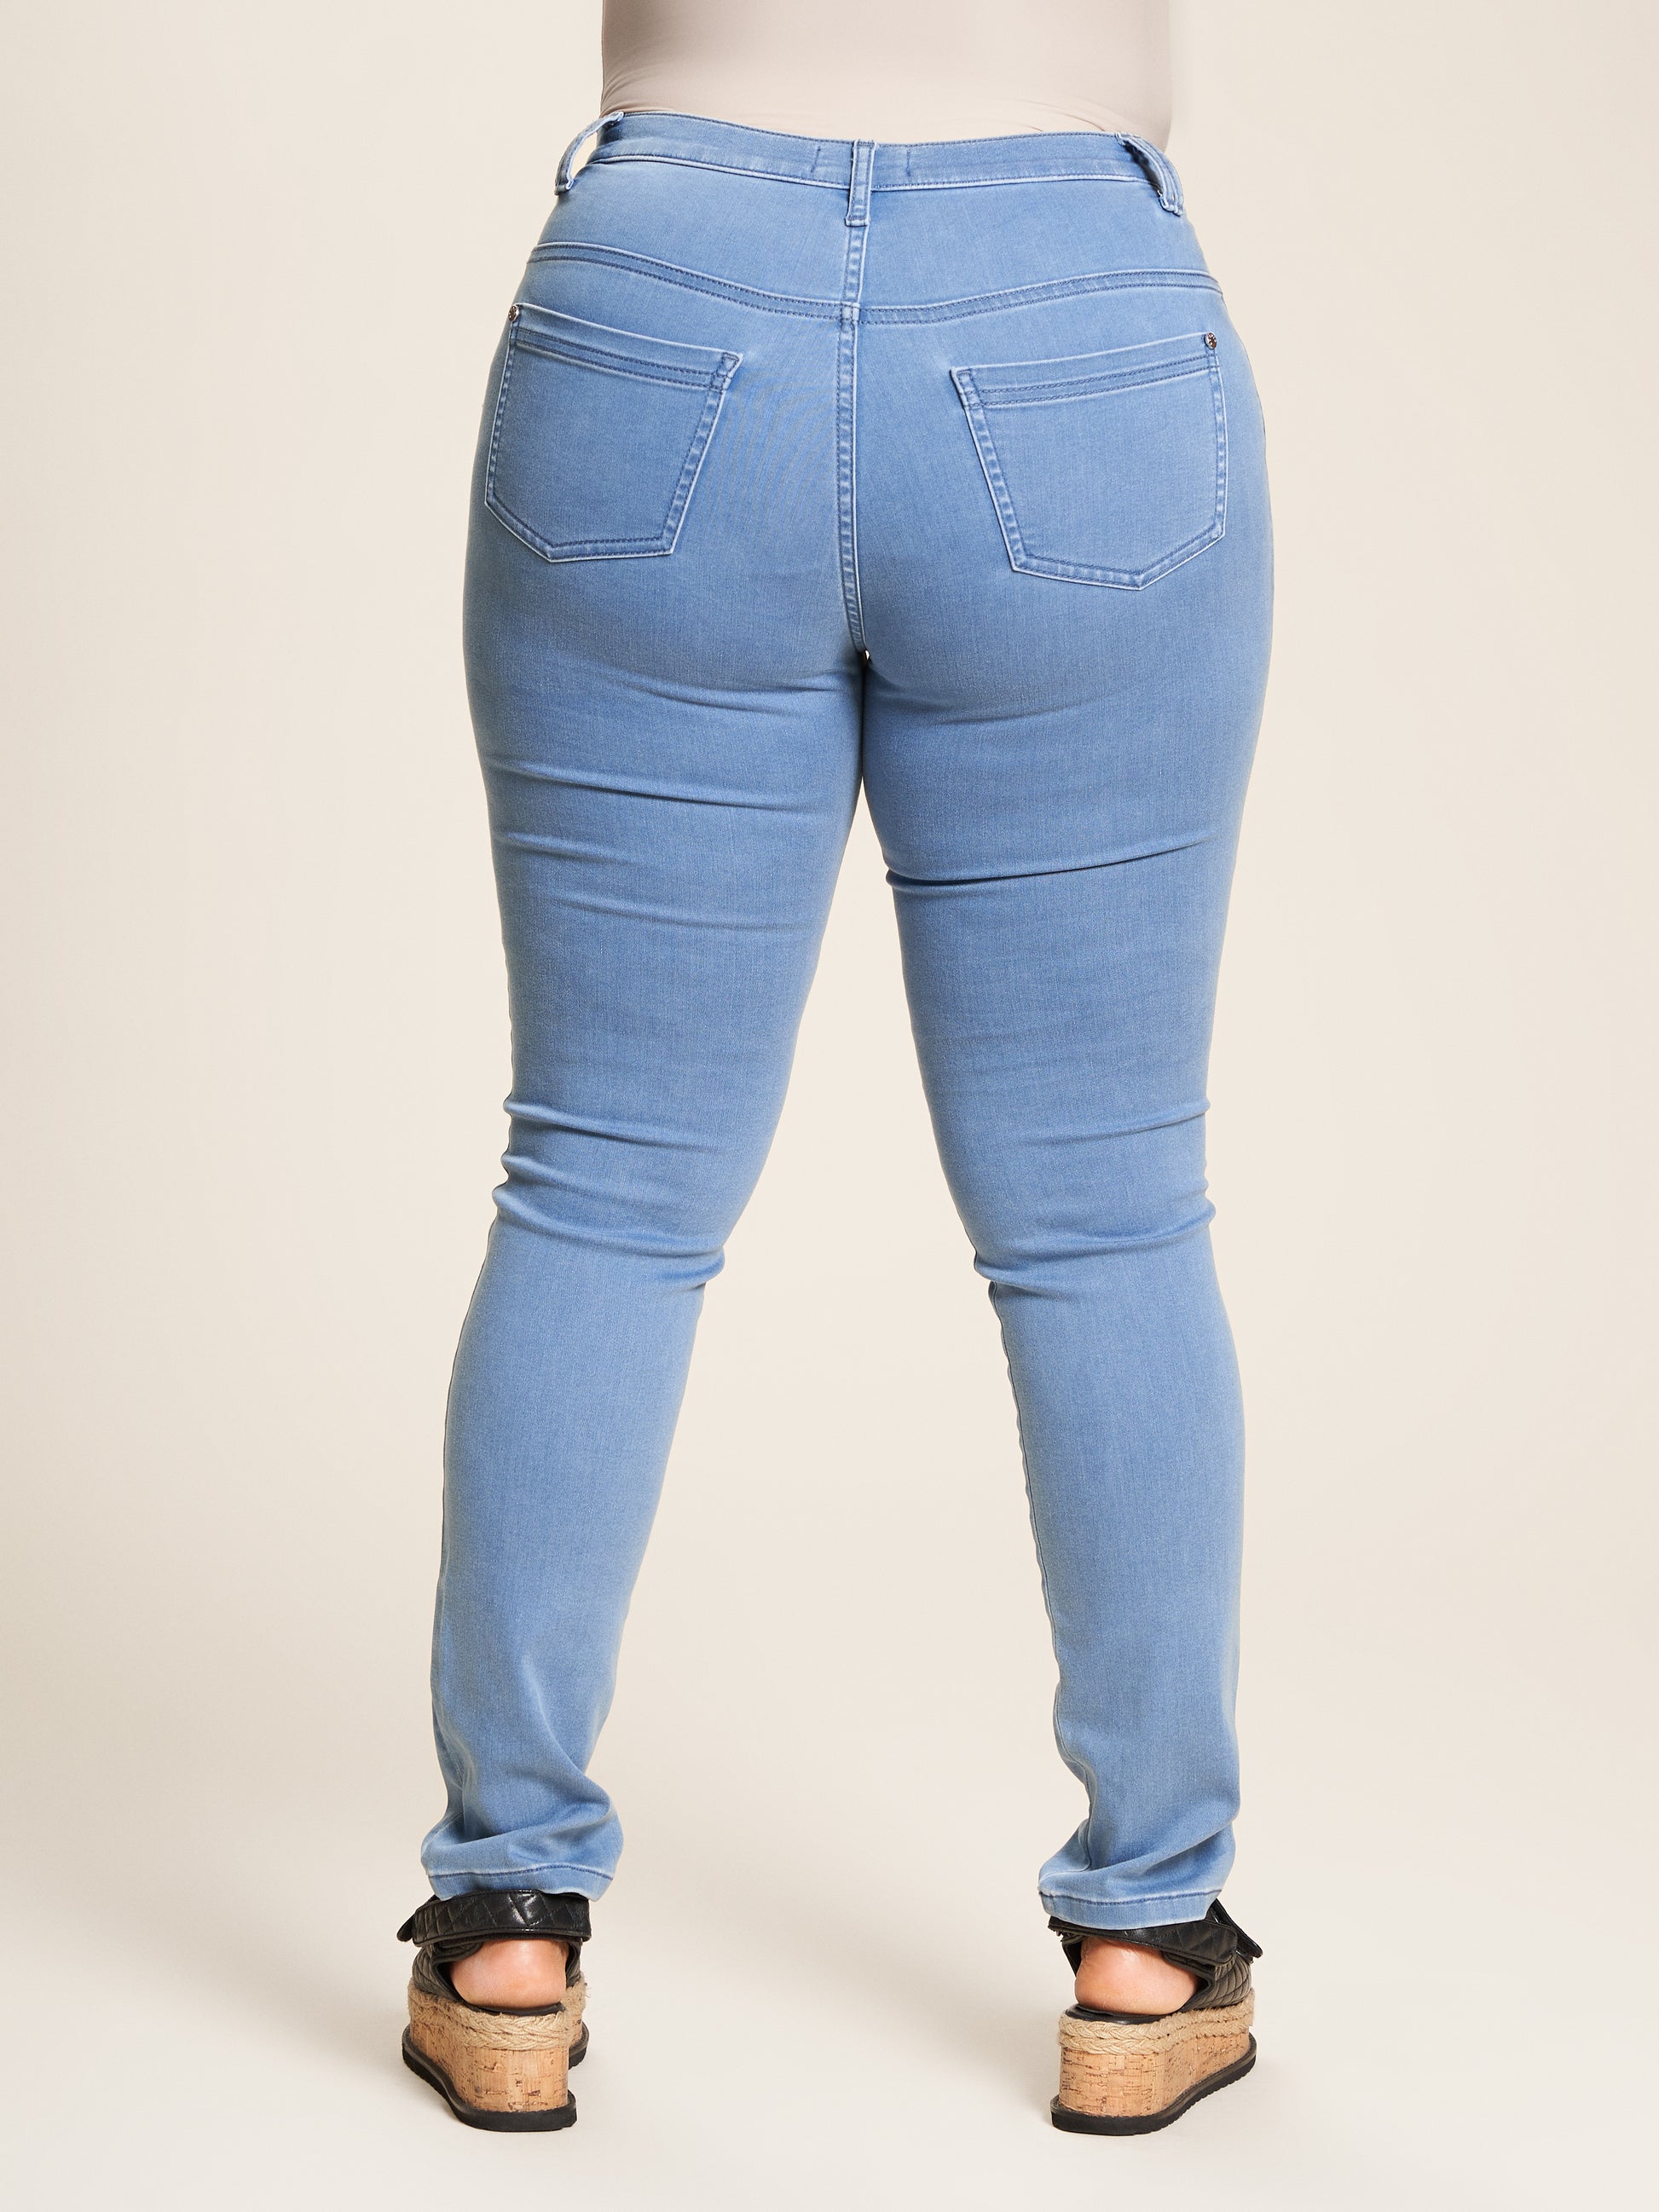 Studio Strækbar jeans fra STUDIO CLOTHING Pants Light Denim Carmen Length 32"